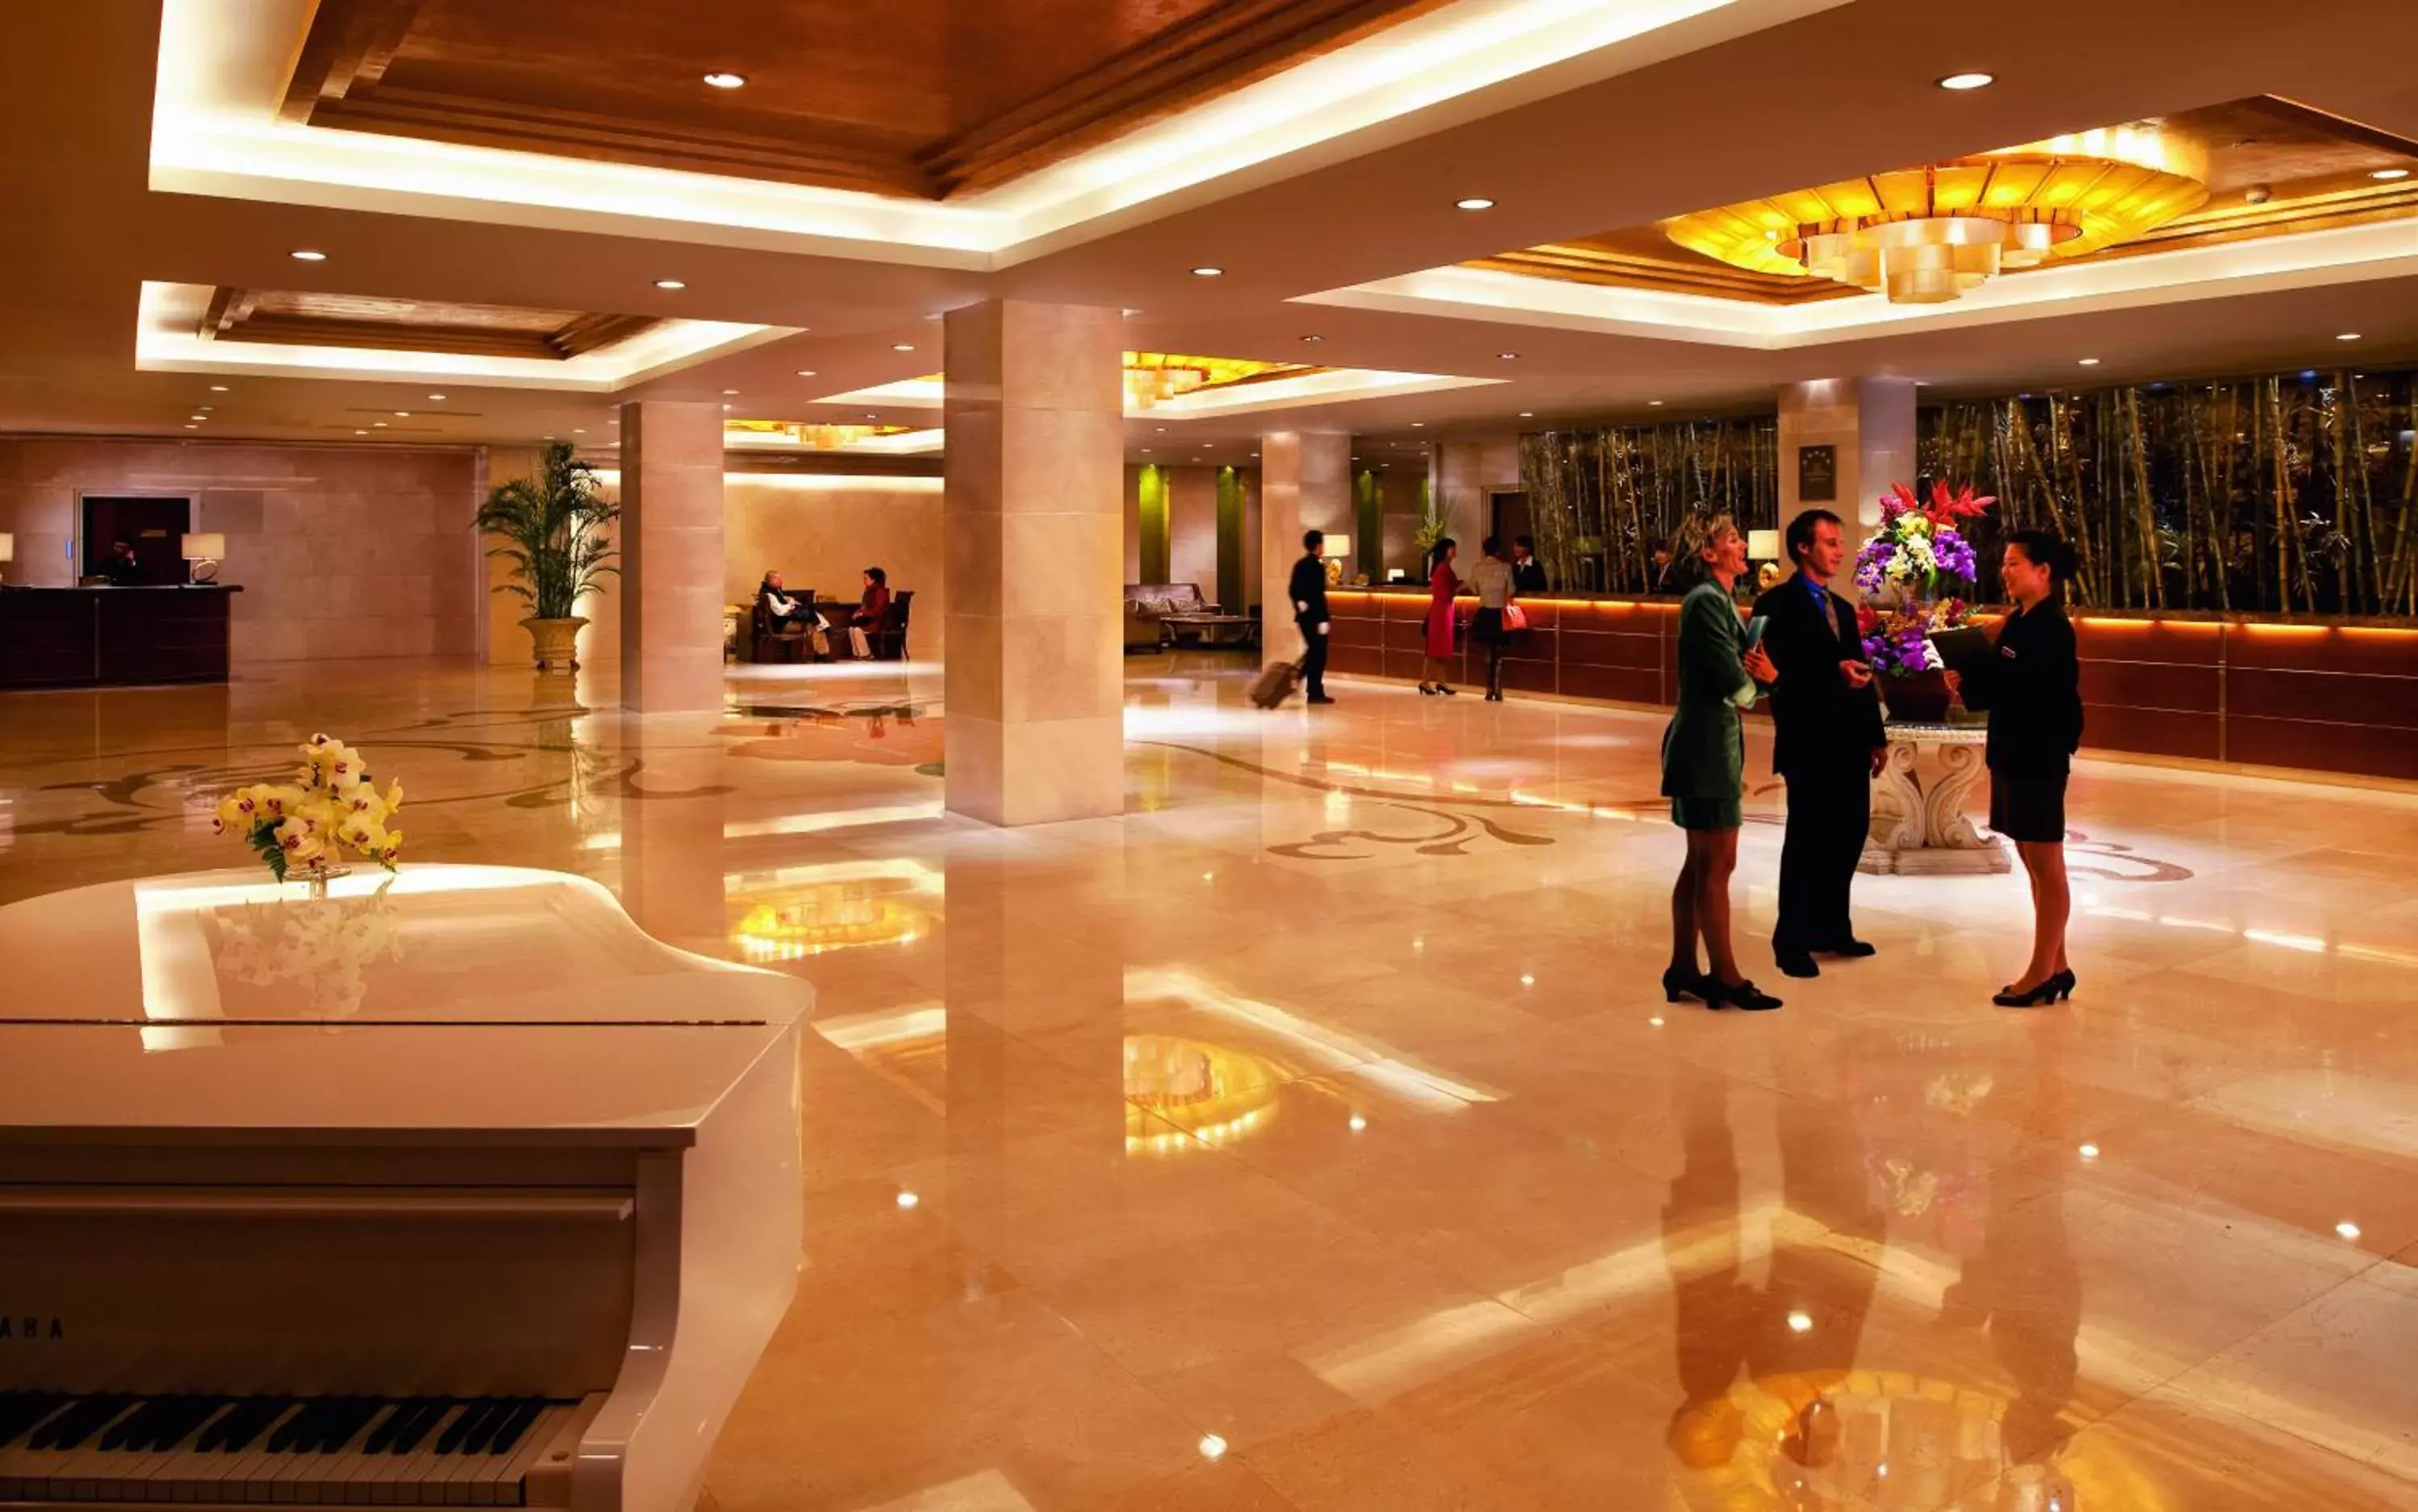 Lobby or reception in Sunworld Dynasty Hotel Beijing Wangfujing